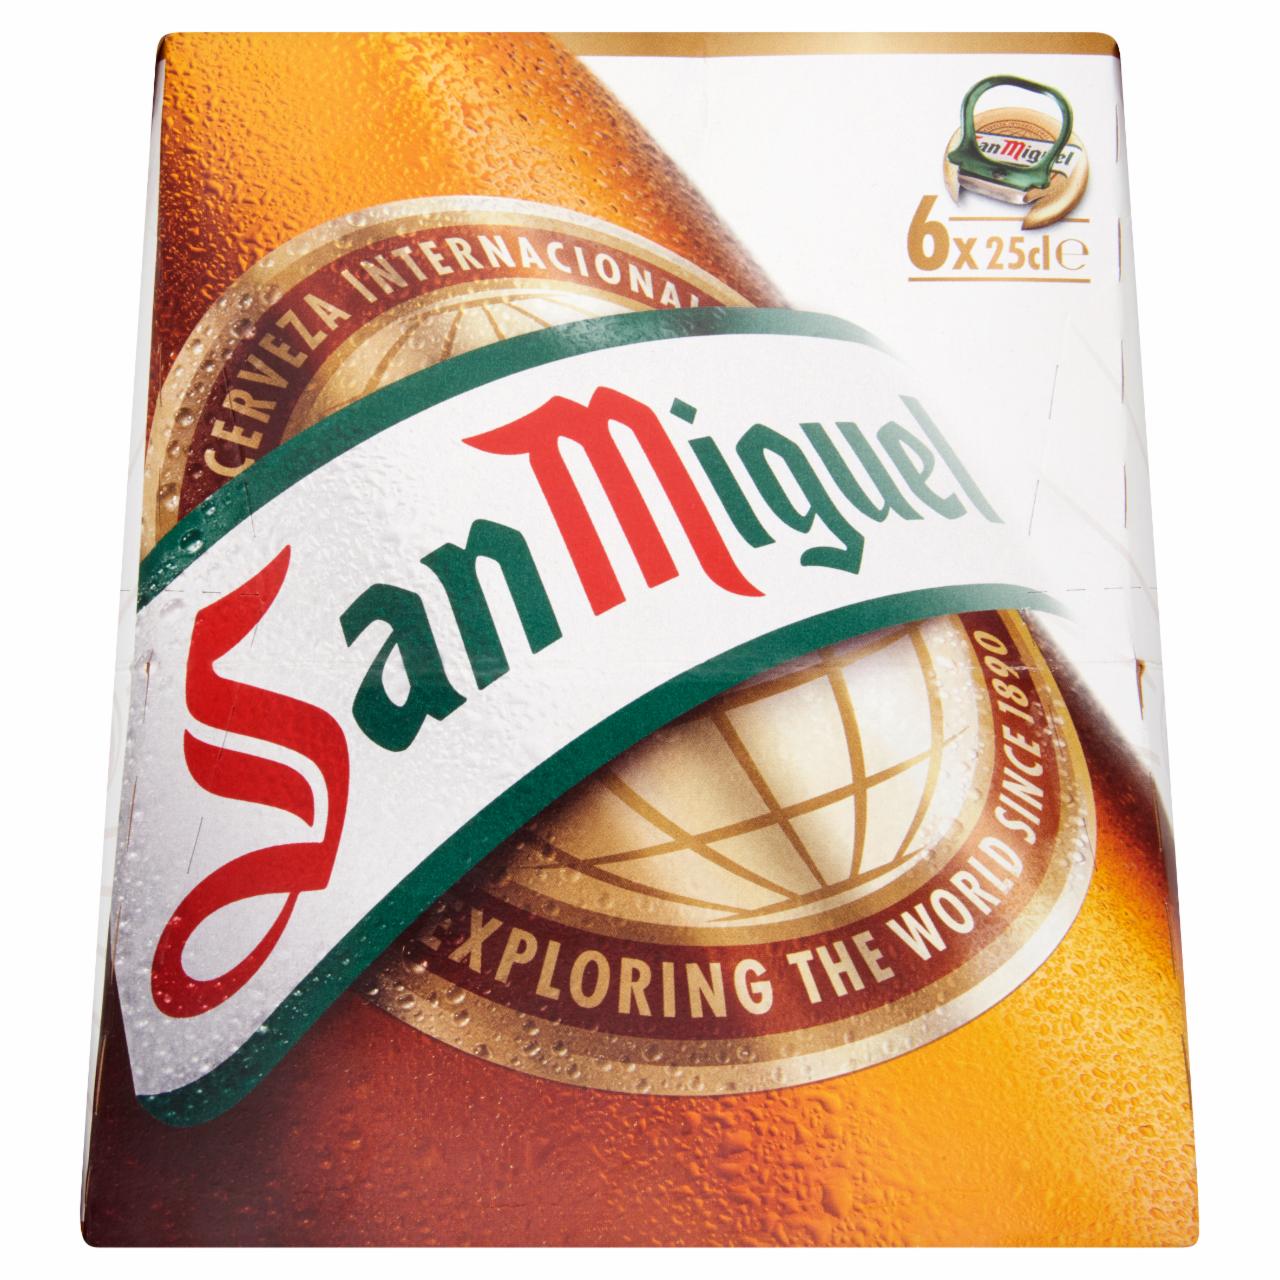 Képek - San Miguel prémium világos sör 5,4% 6 x 25 cl